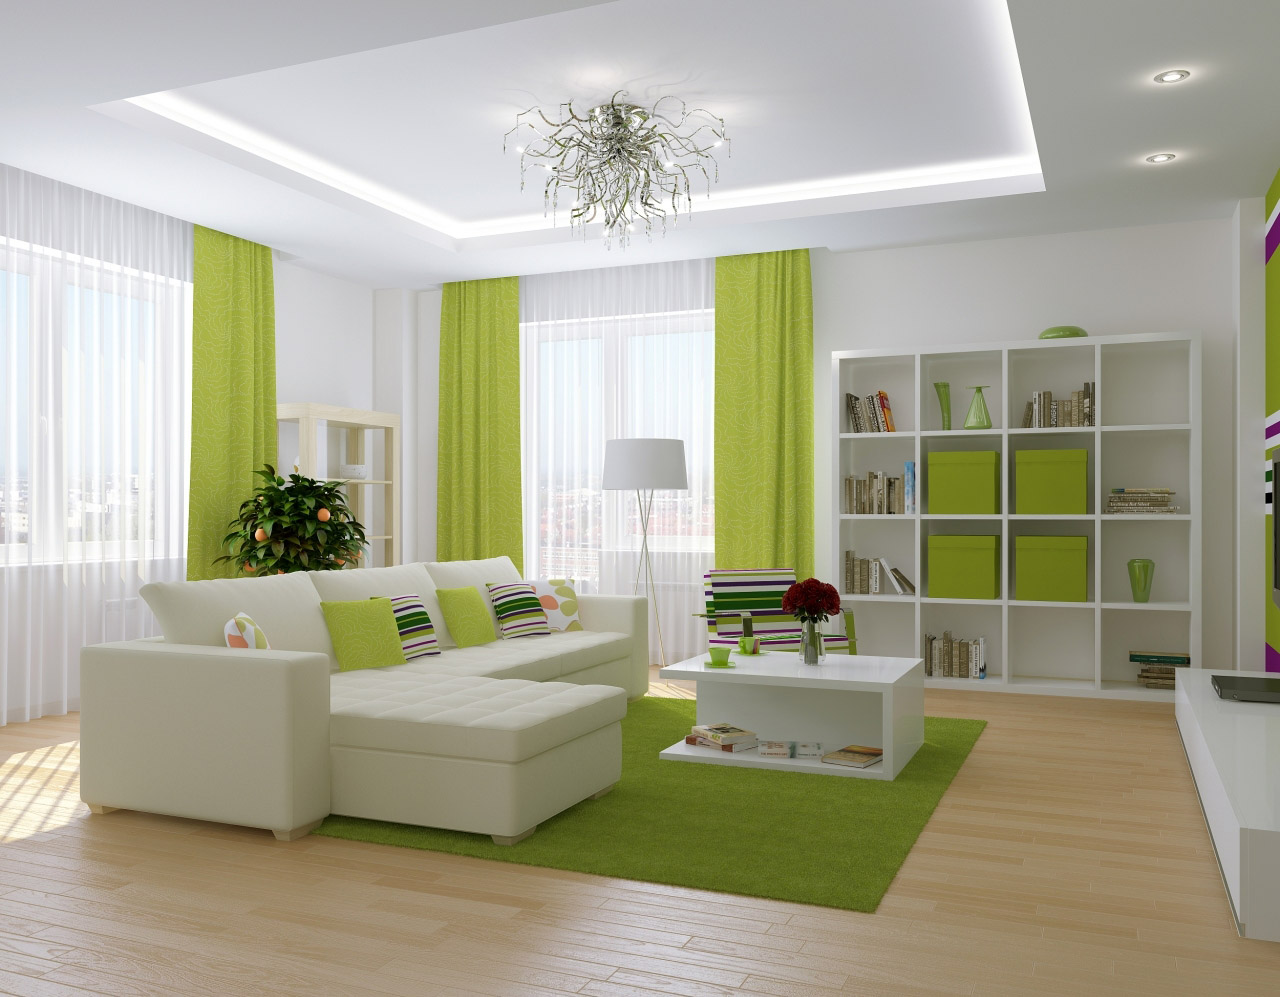 Белый потолок из гипсокартона с подсветкой в бело-зеленой гостиной